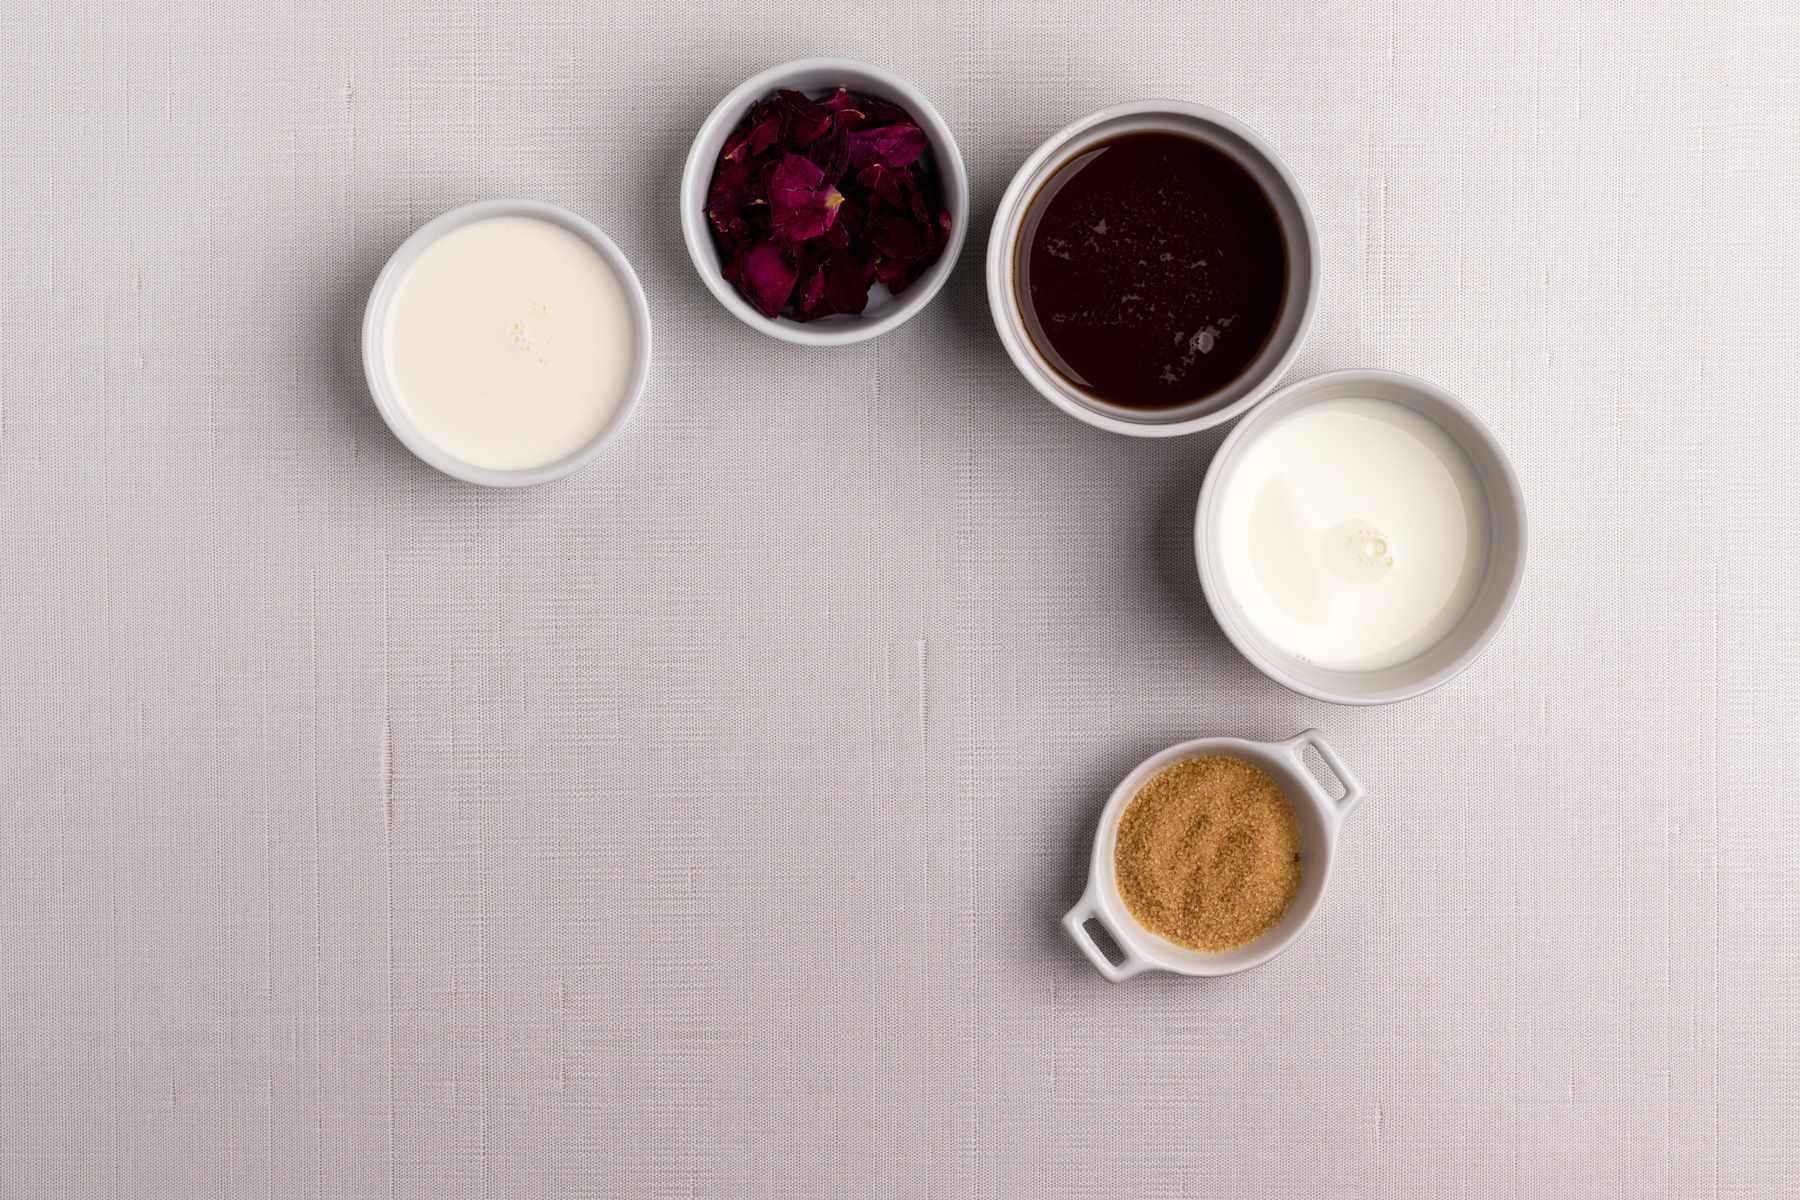 Rose chai latte ingredients.